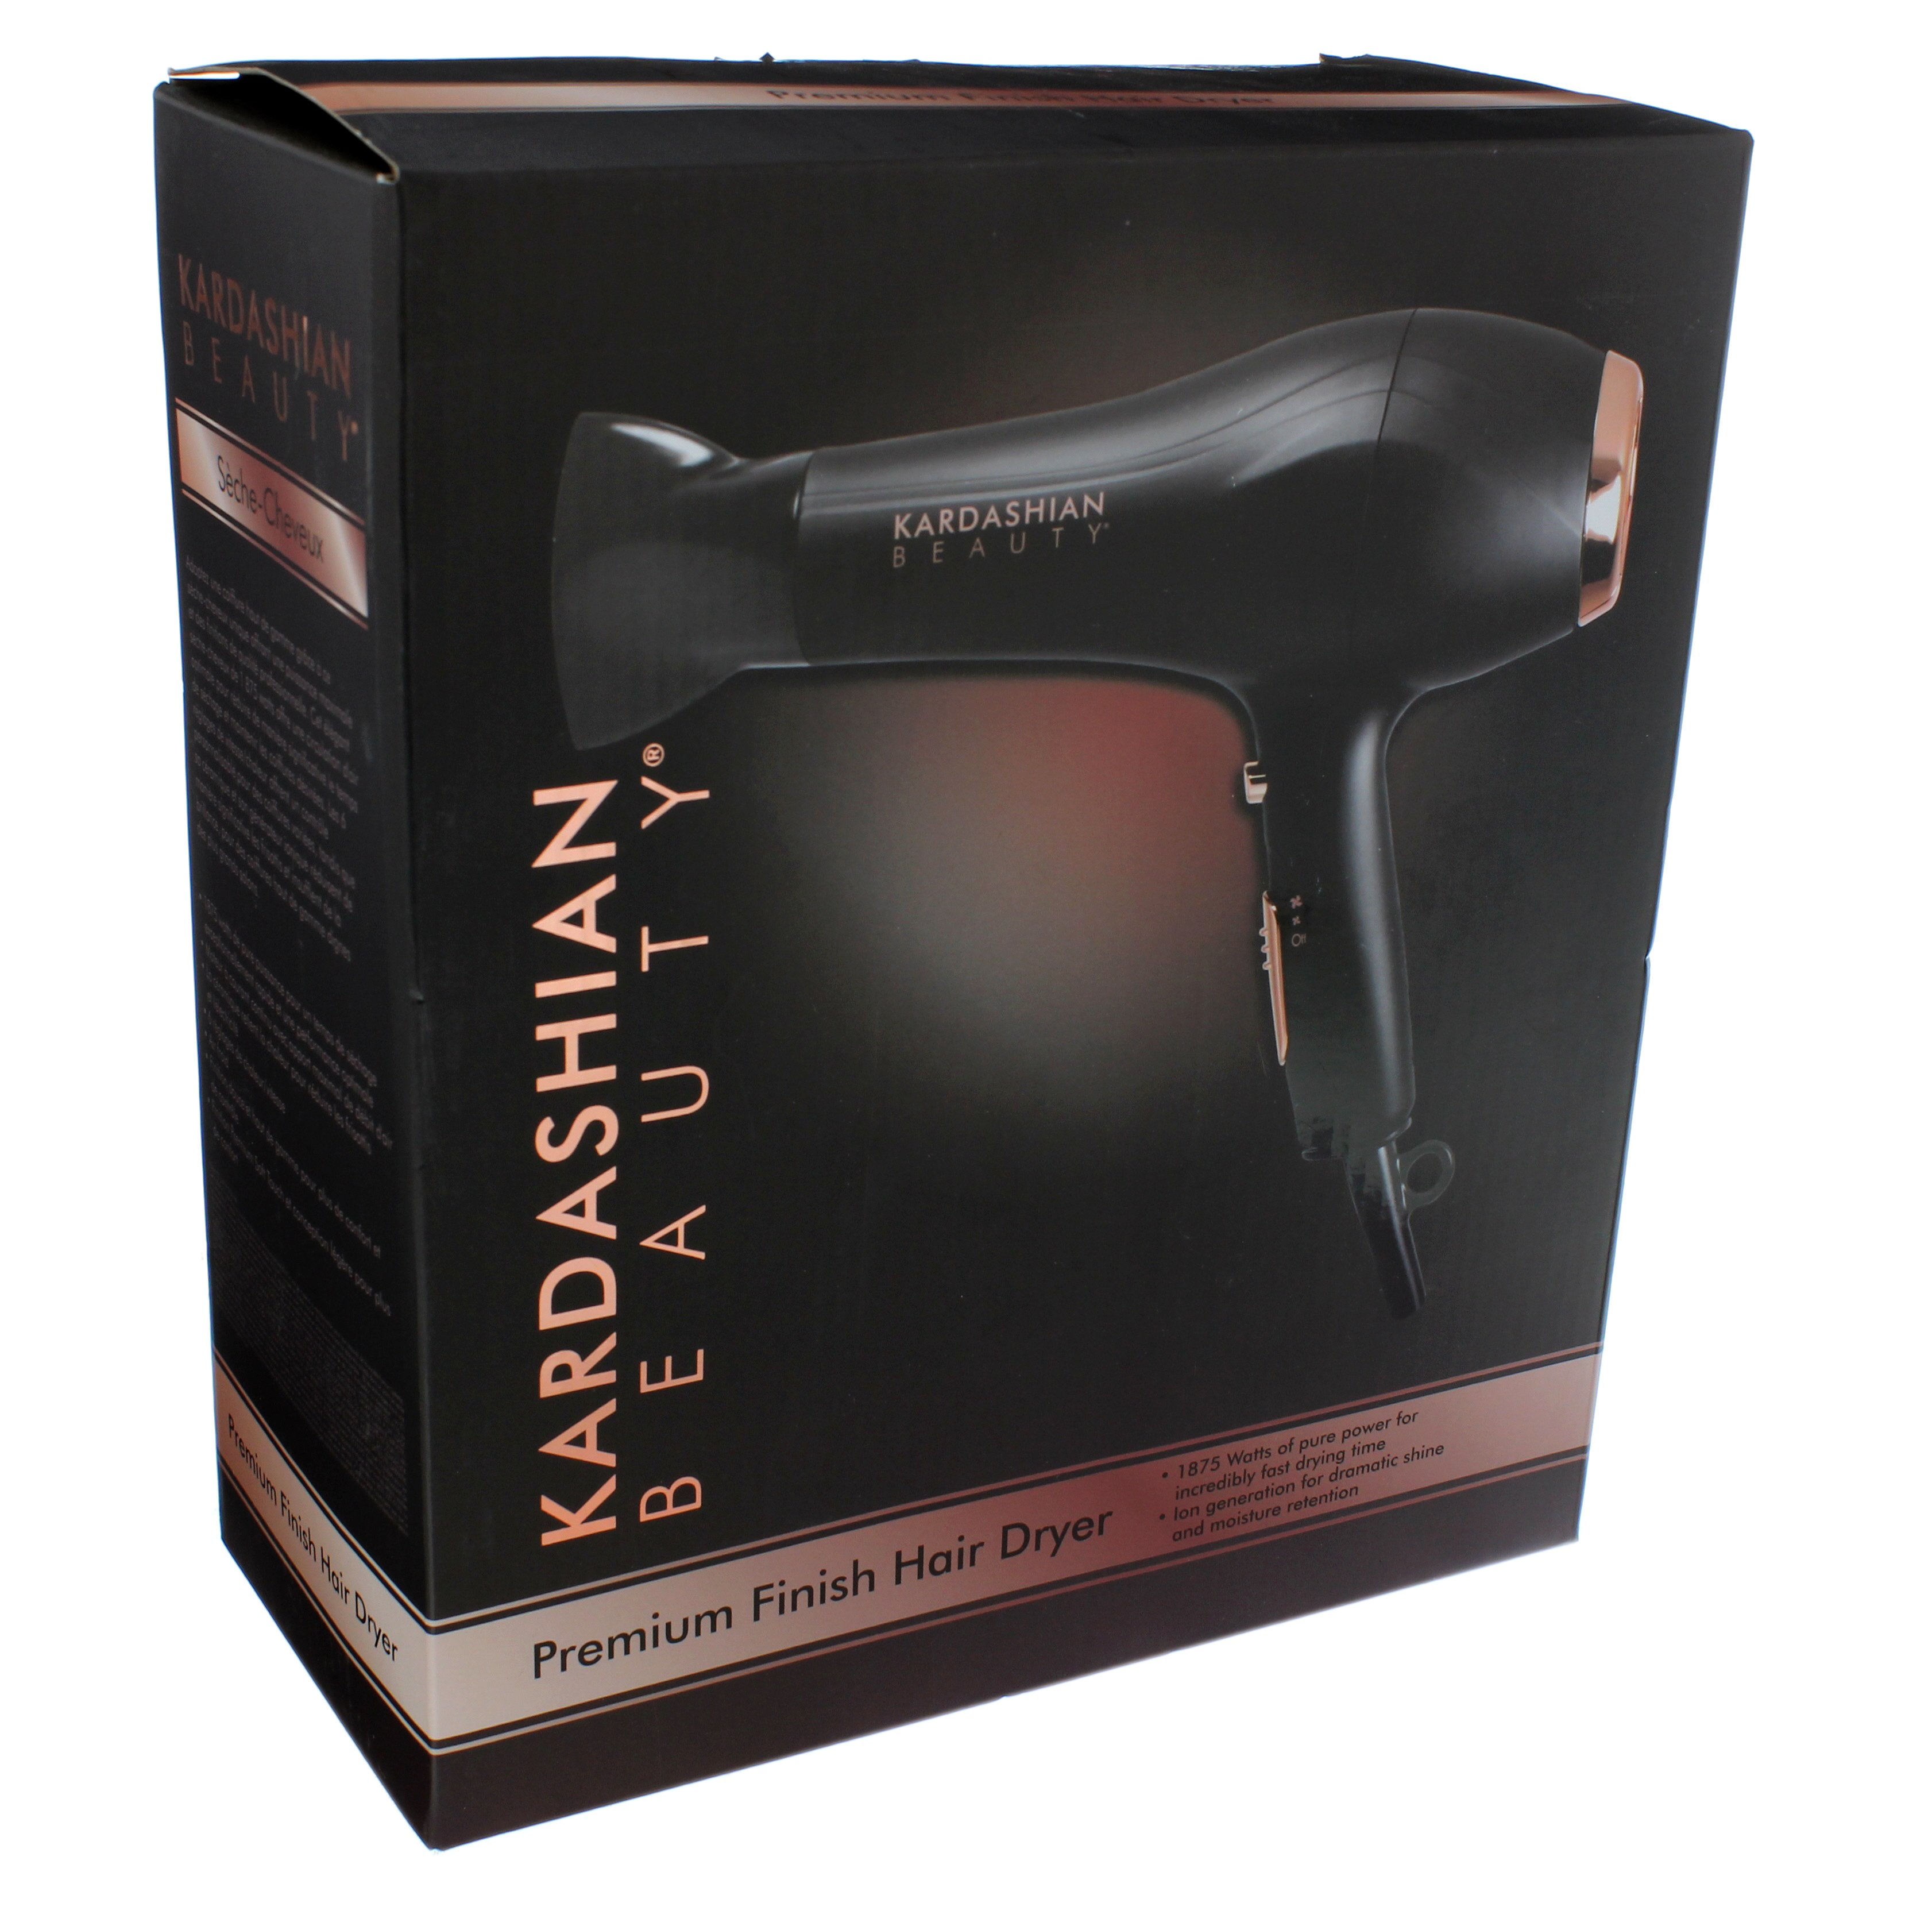 Kardashian Beauty Premium Finish Hair Dryer - Shop Hair Dryers at H-E-B